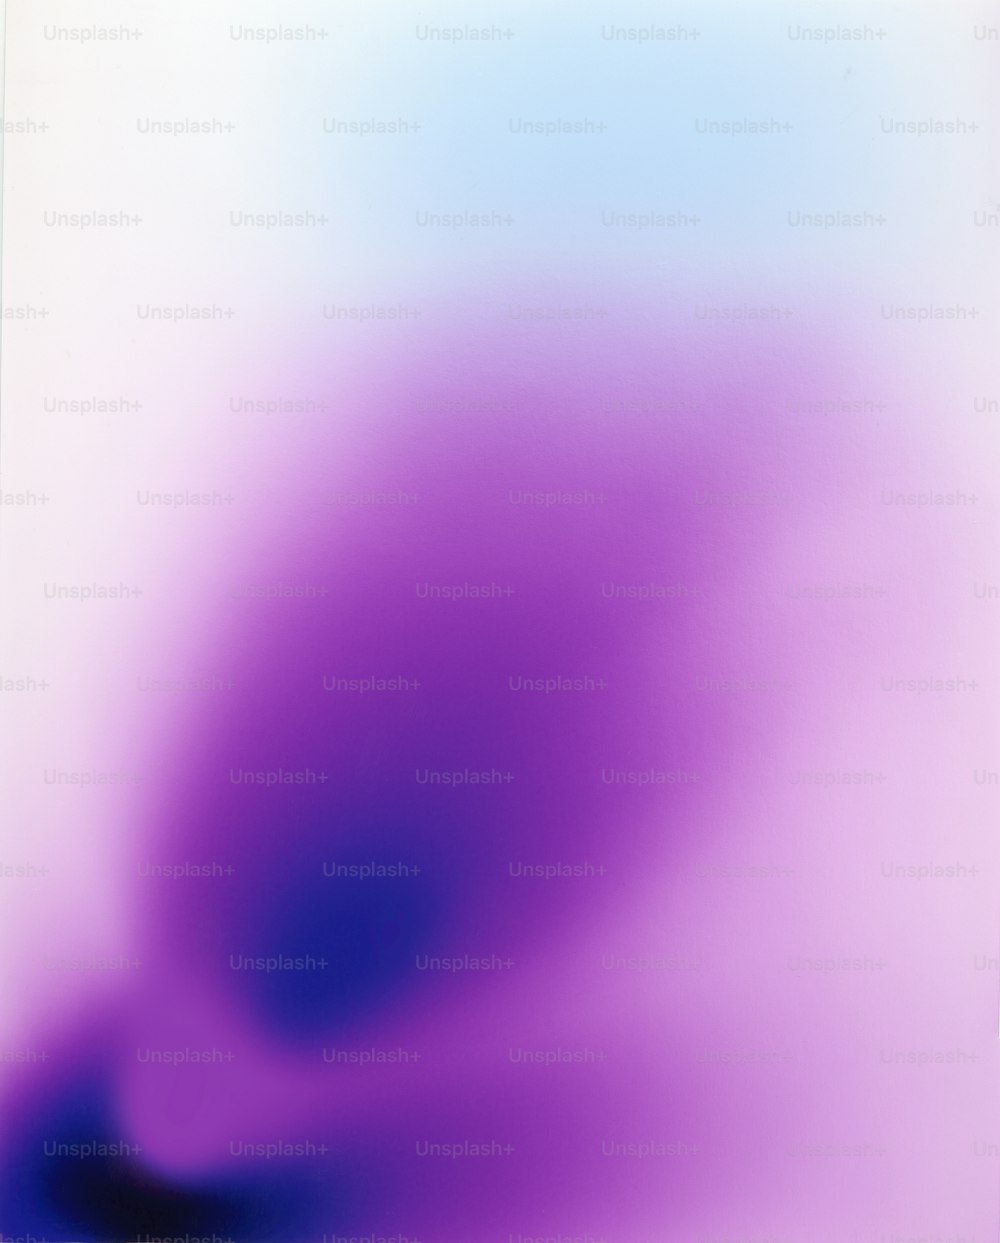 Un'immagine sfocata di uno sfondo blu e viola